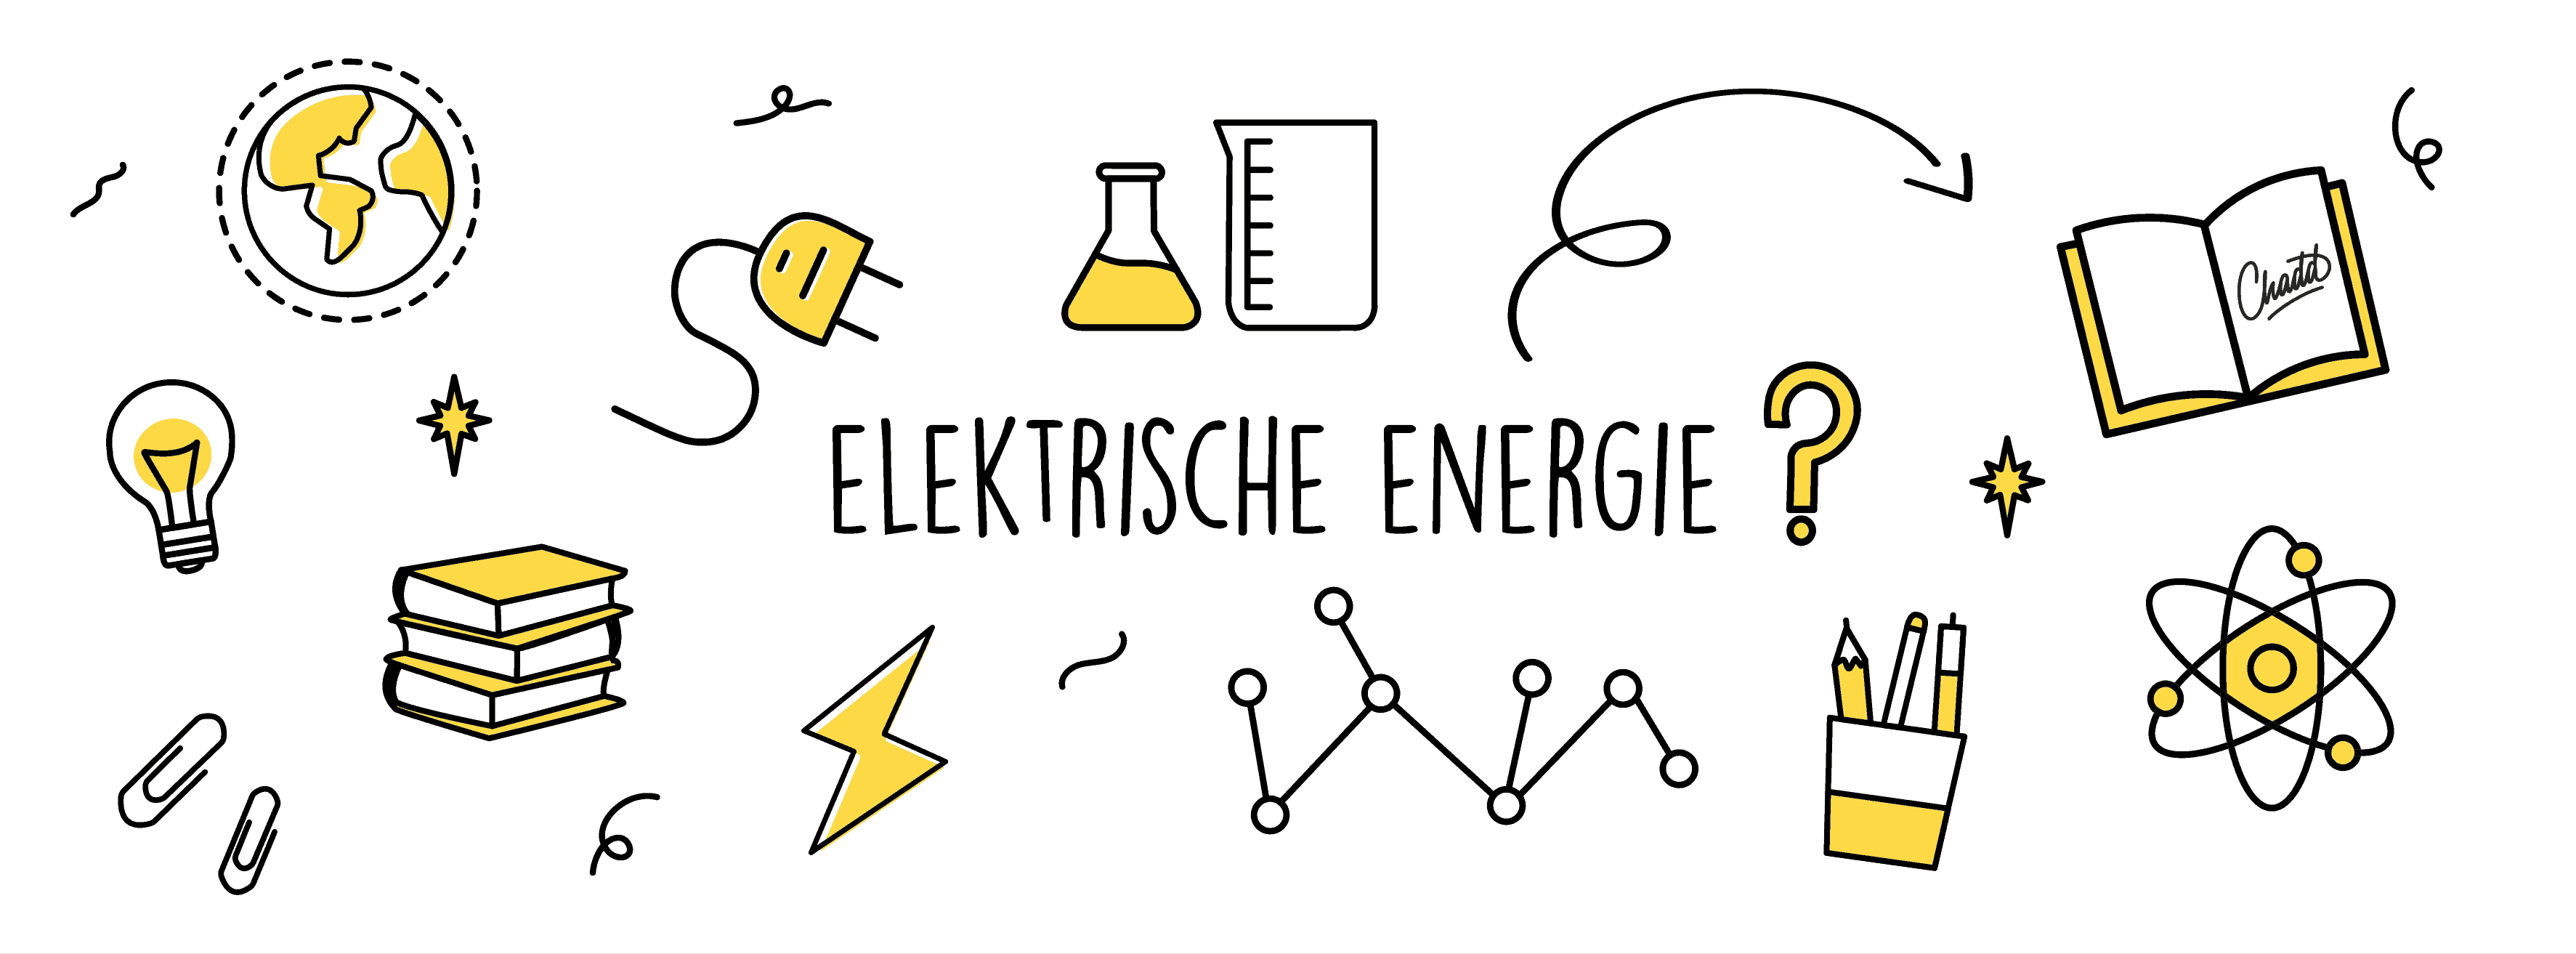 Elektrische energie